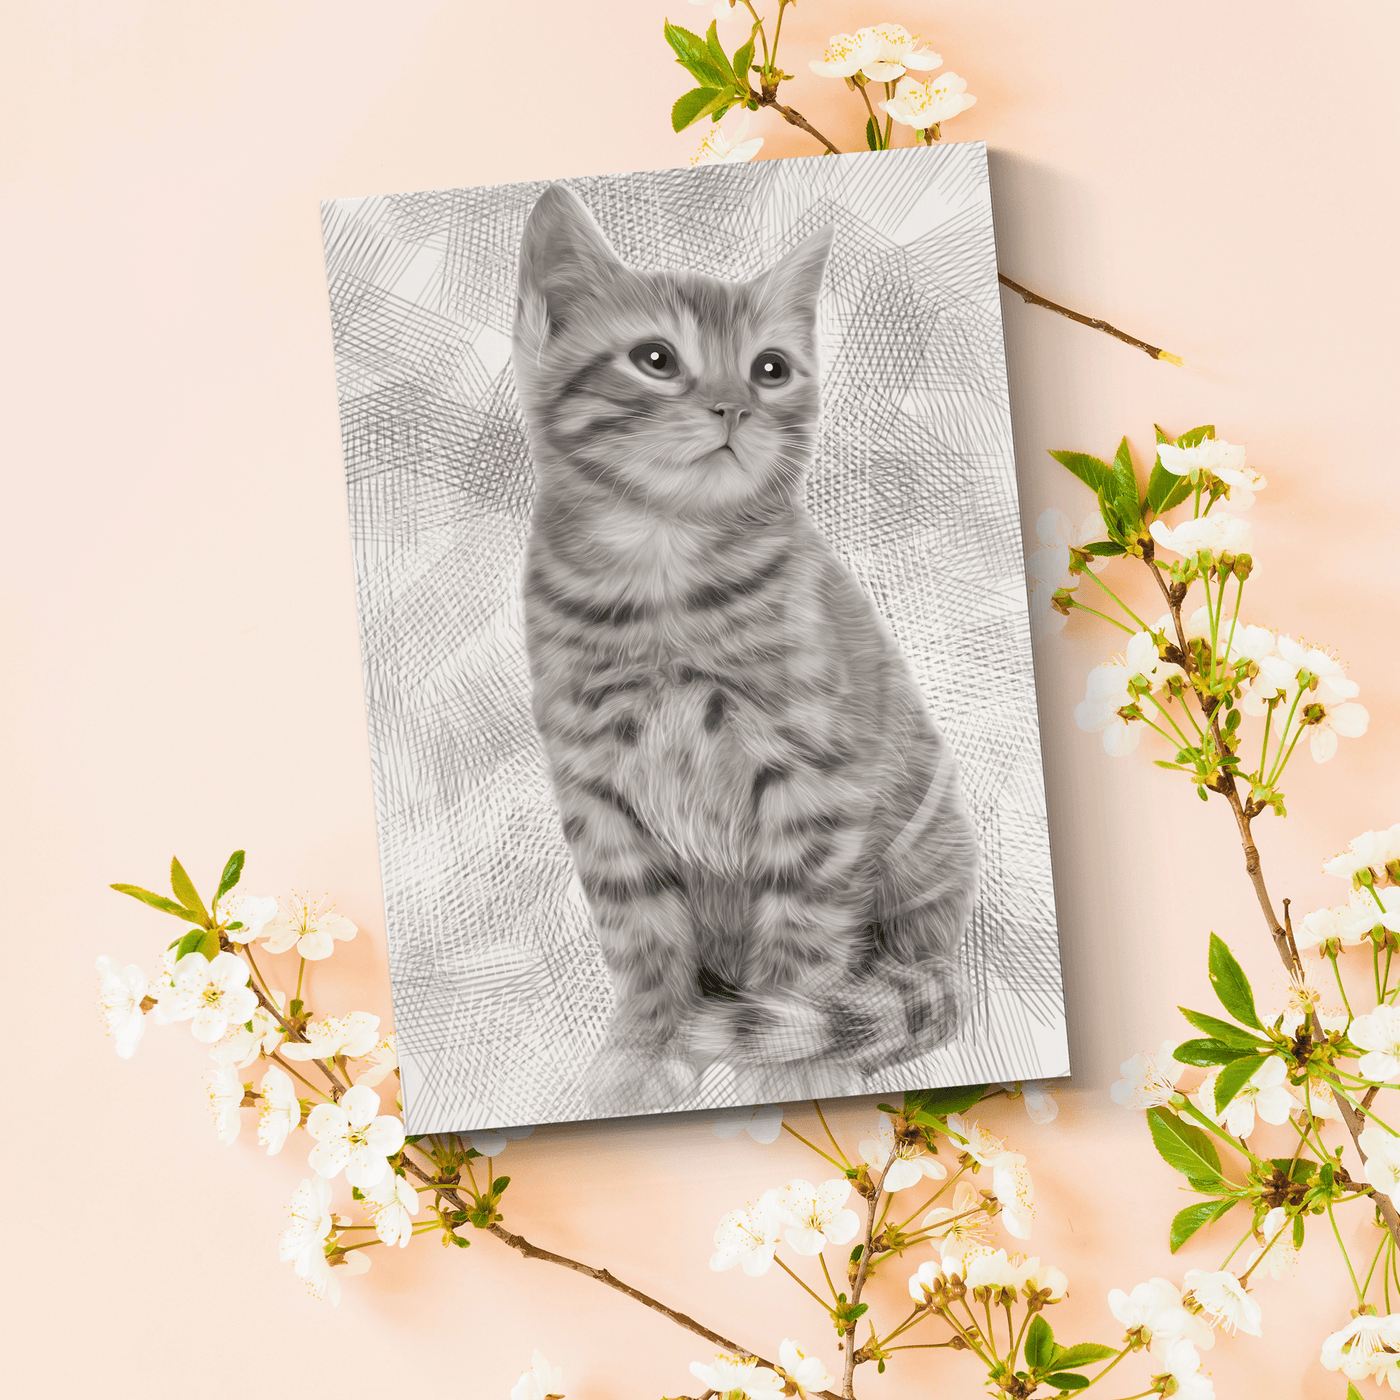 Custom Cat Pencil Portrait